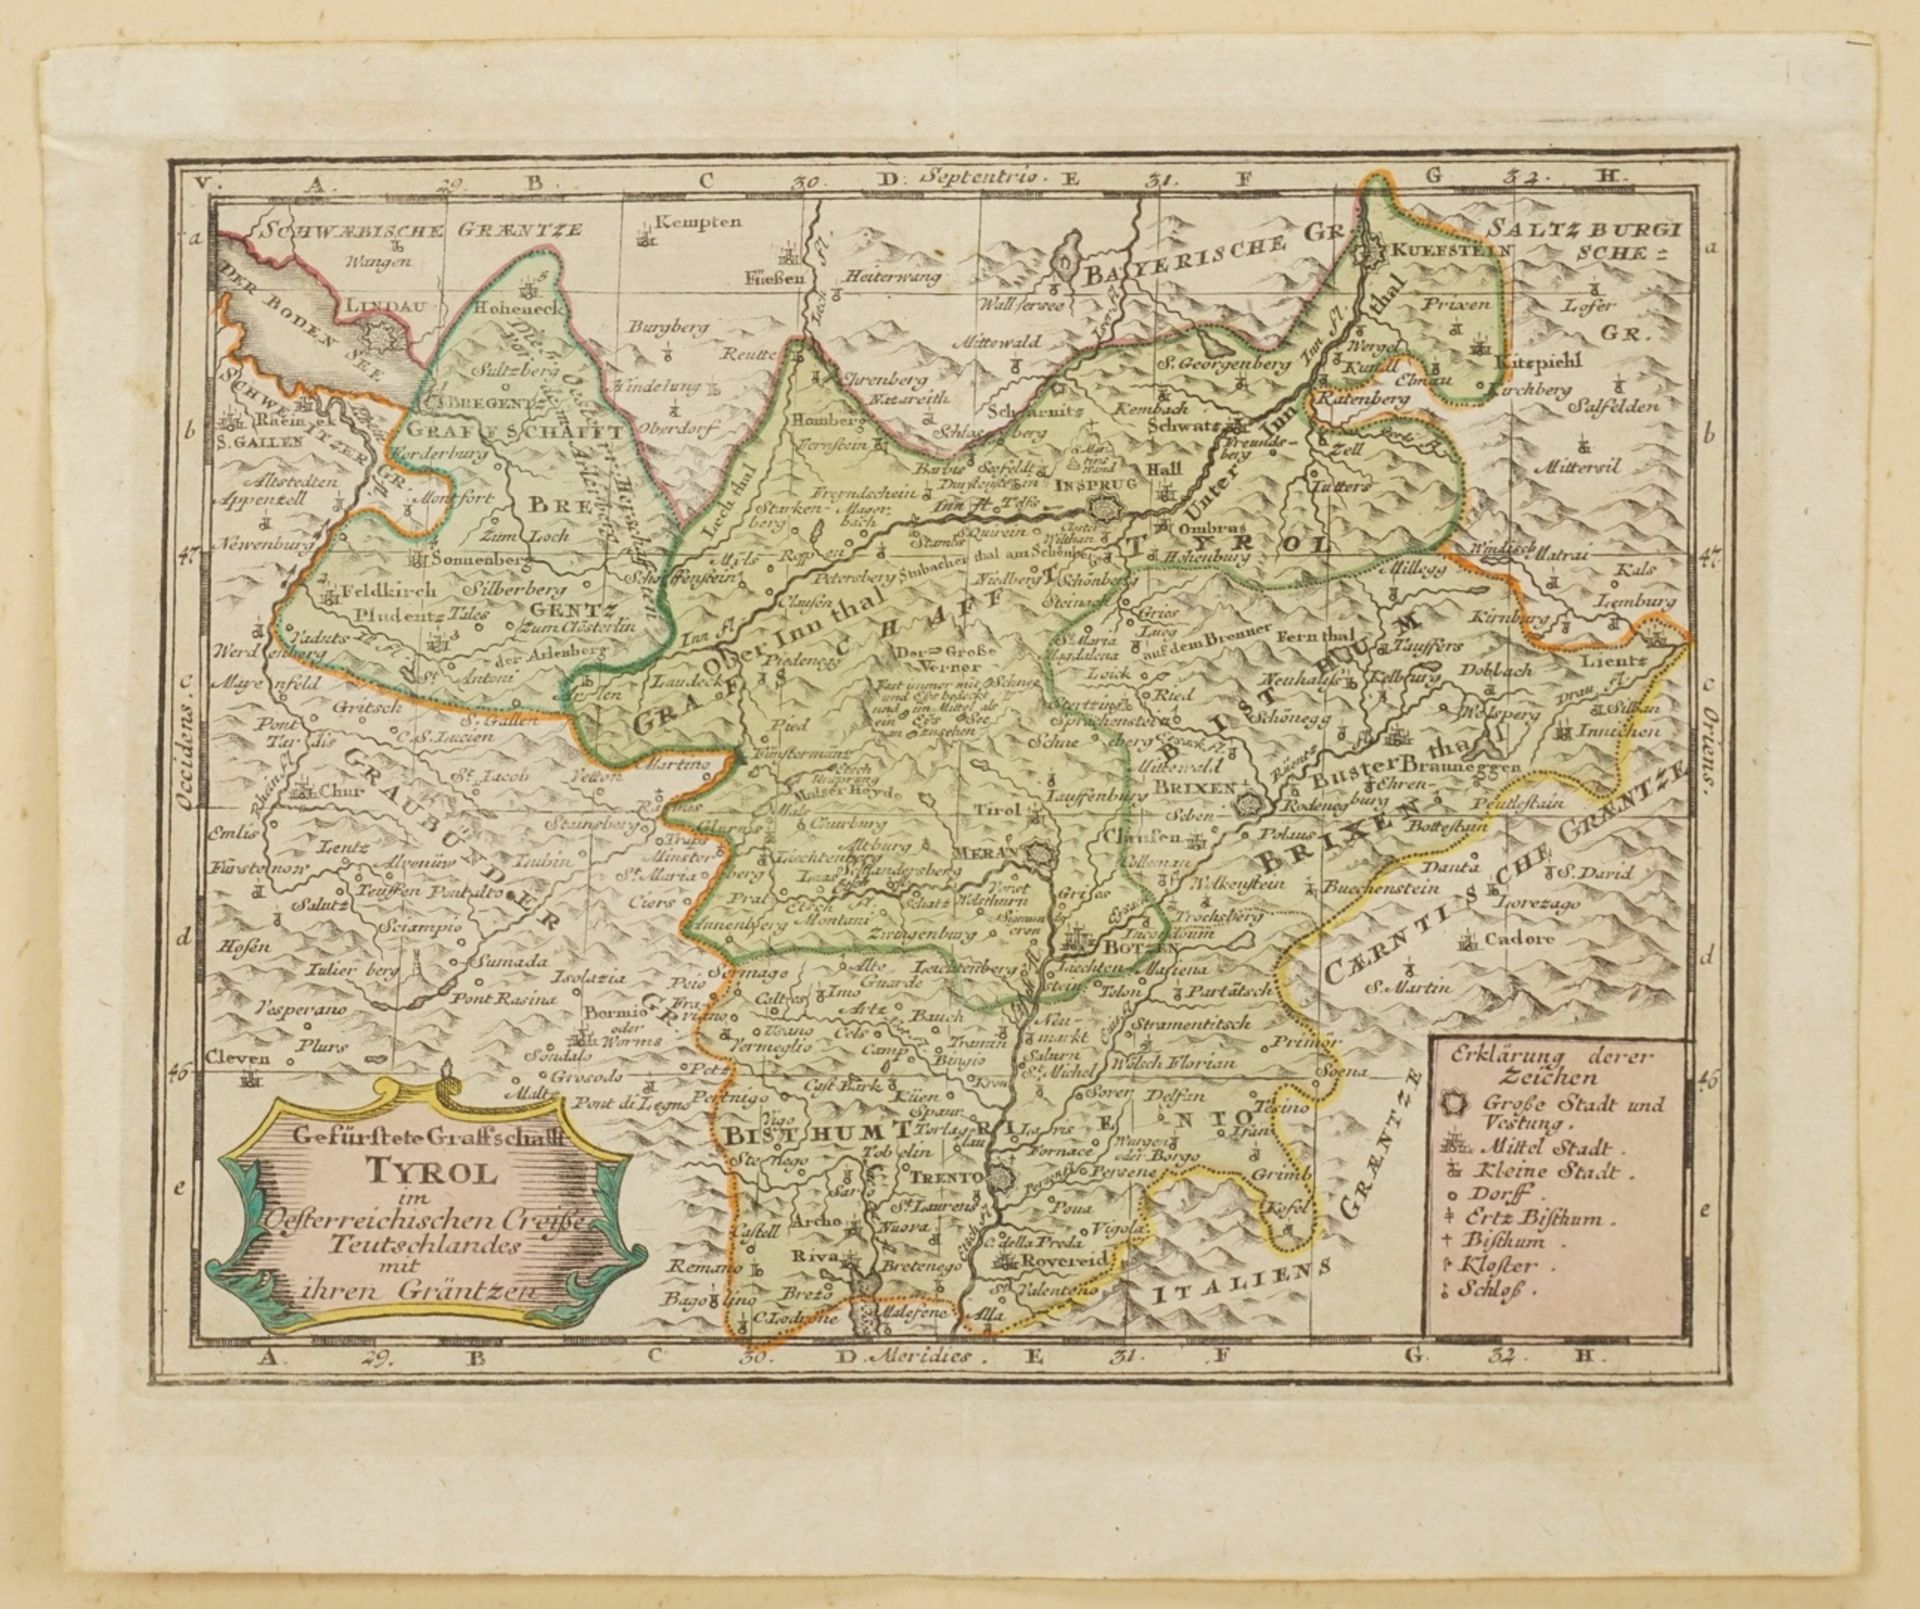 Johann Christoph Weigel, "Gefürstete Graffschafft Tyrol" (Karte von Tirol) - Image 3 of 4